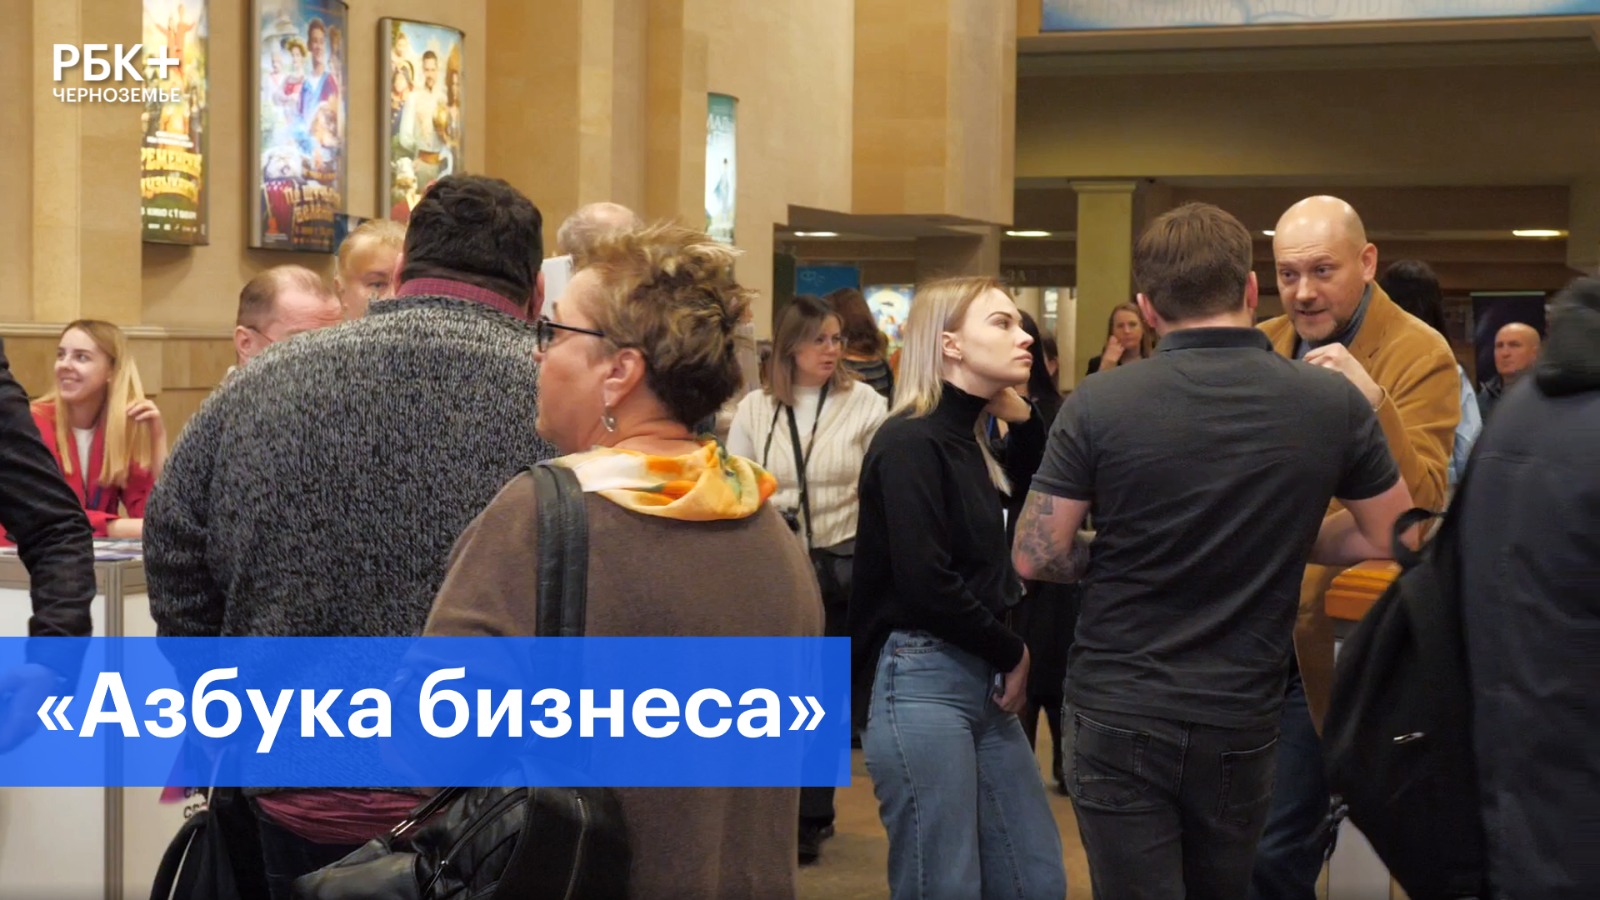 Более 30 спикеров выступили на конференции «Азбука бизнеса» в Воронеже